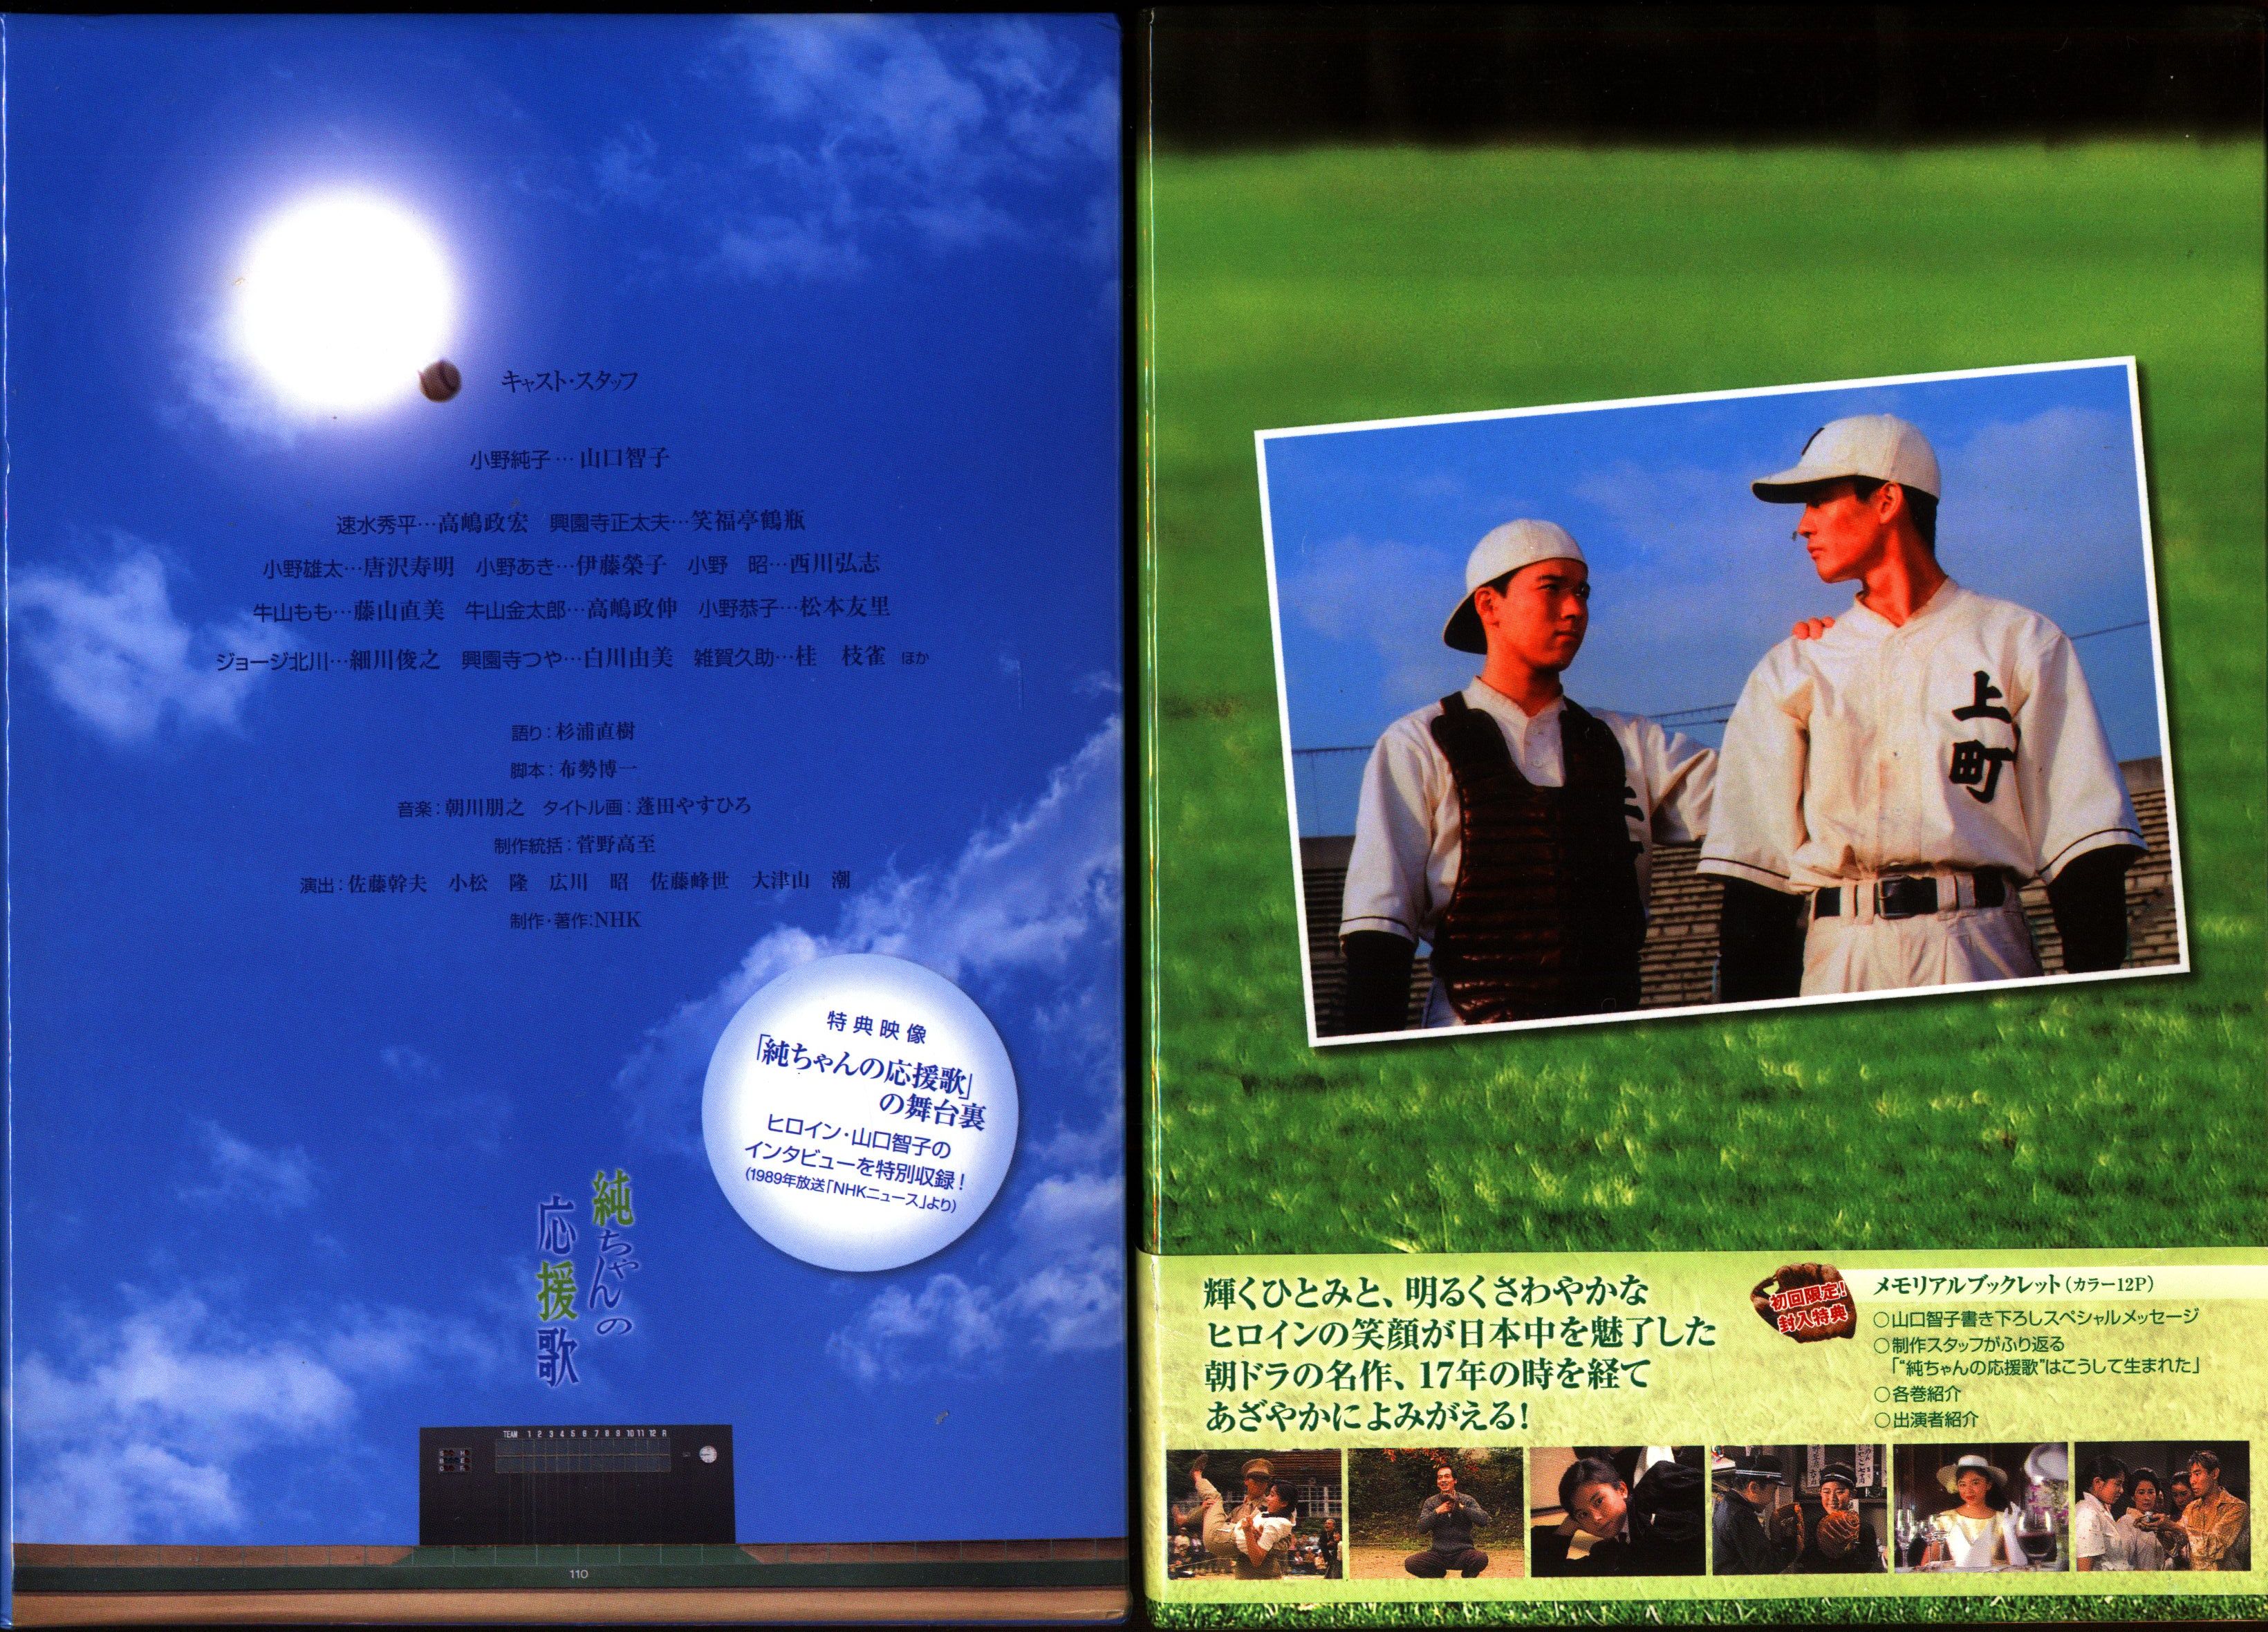 国内ドラマDVD 連続テレビ小説 純ちゃんの応援歌 DVD-BOX全2巻 セット